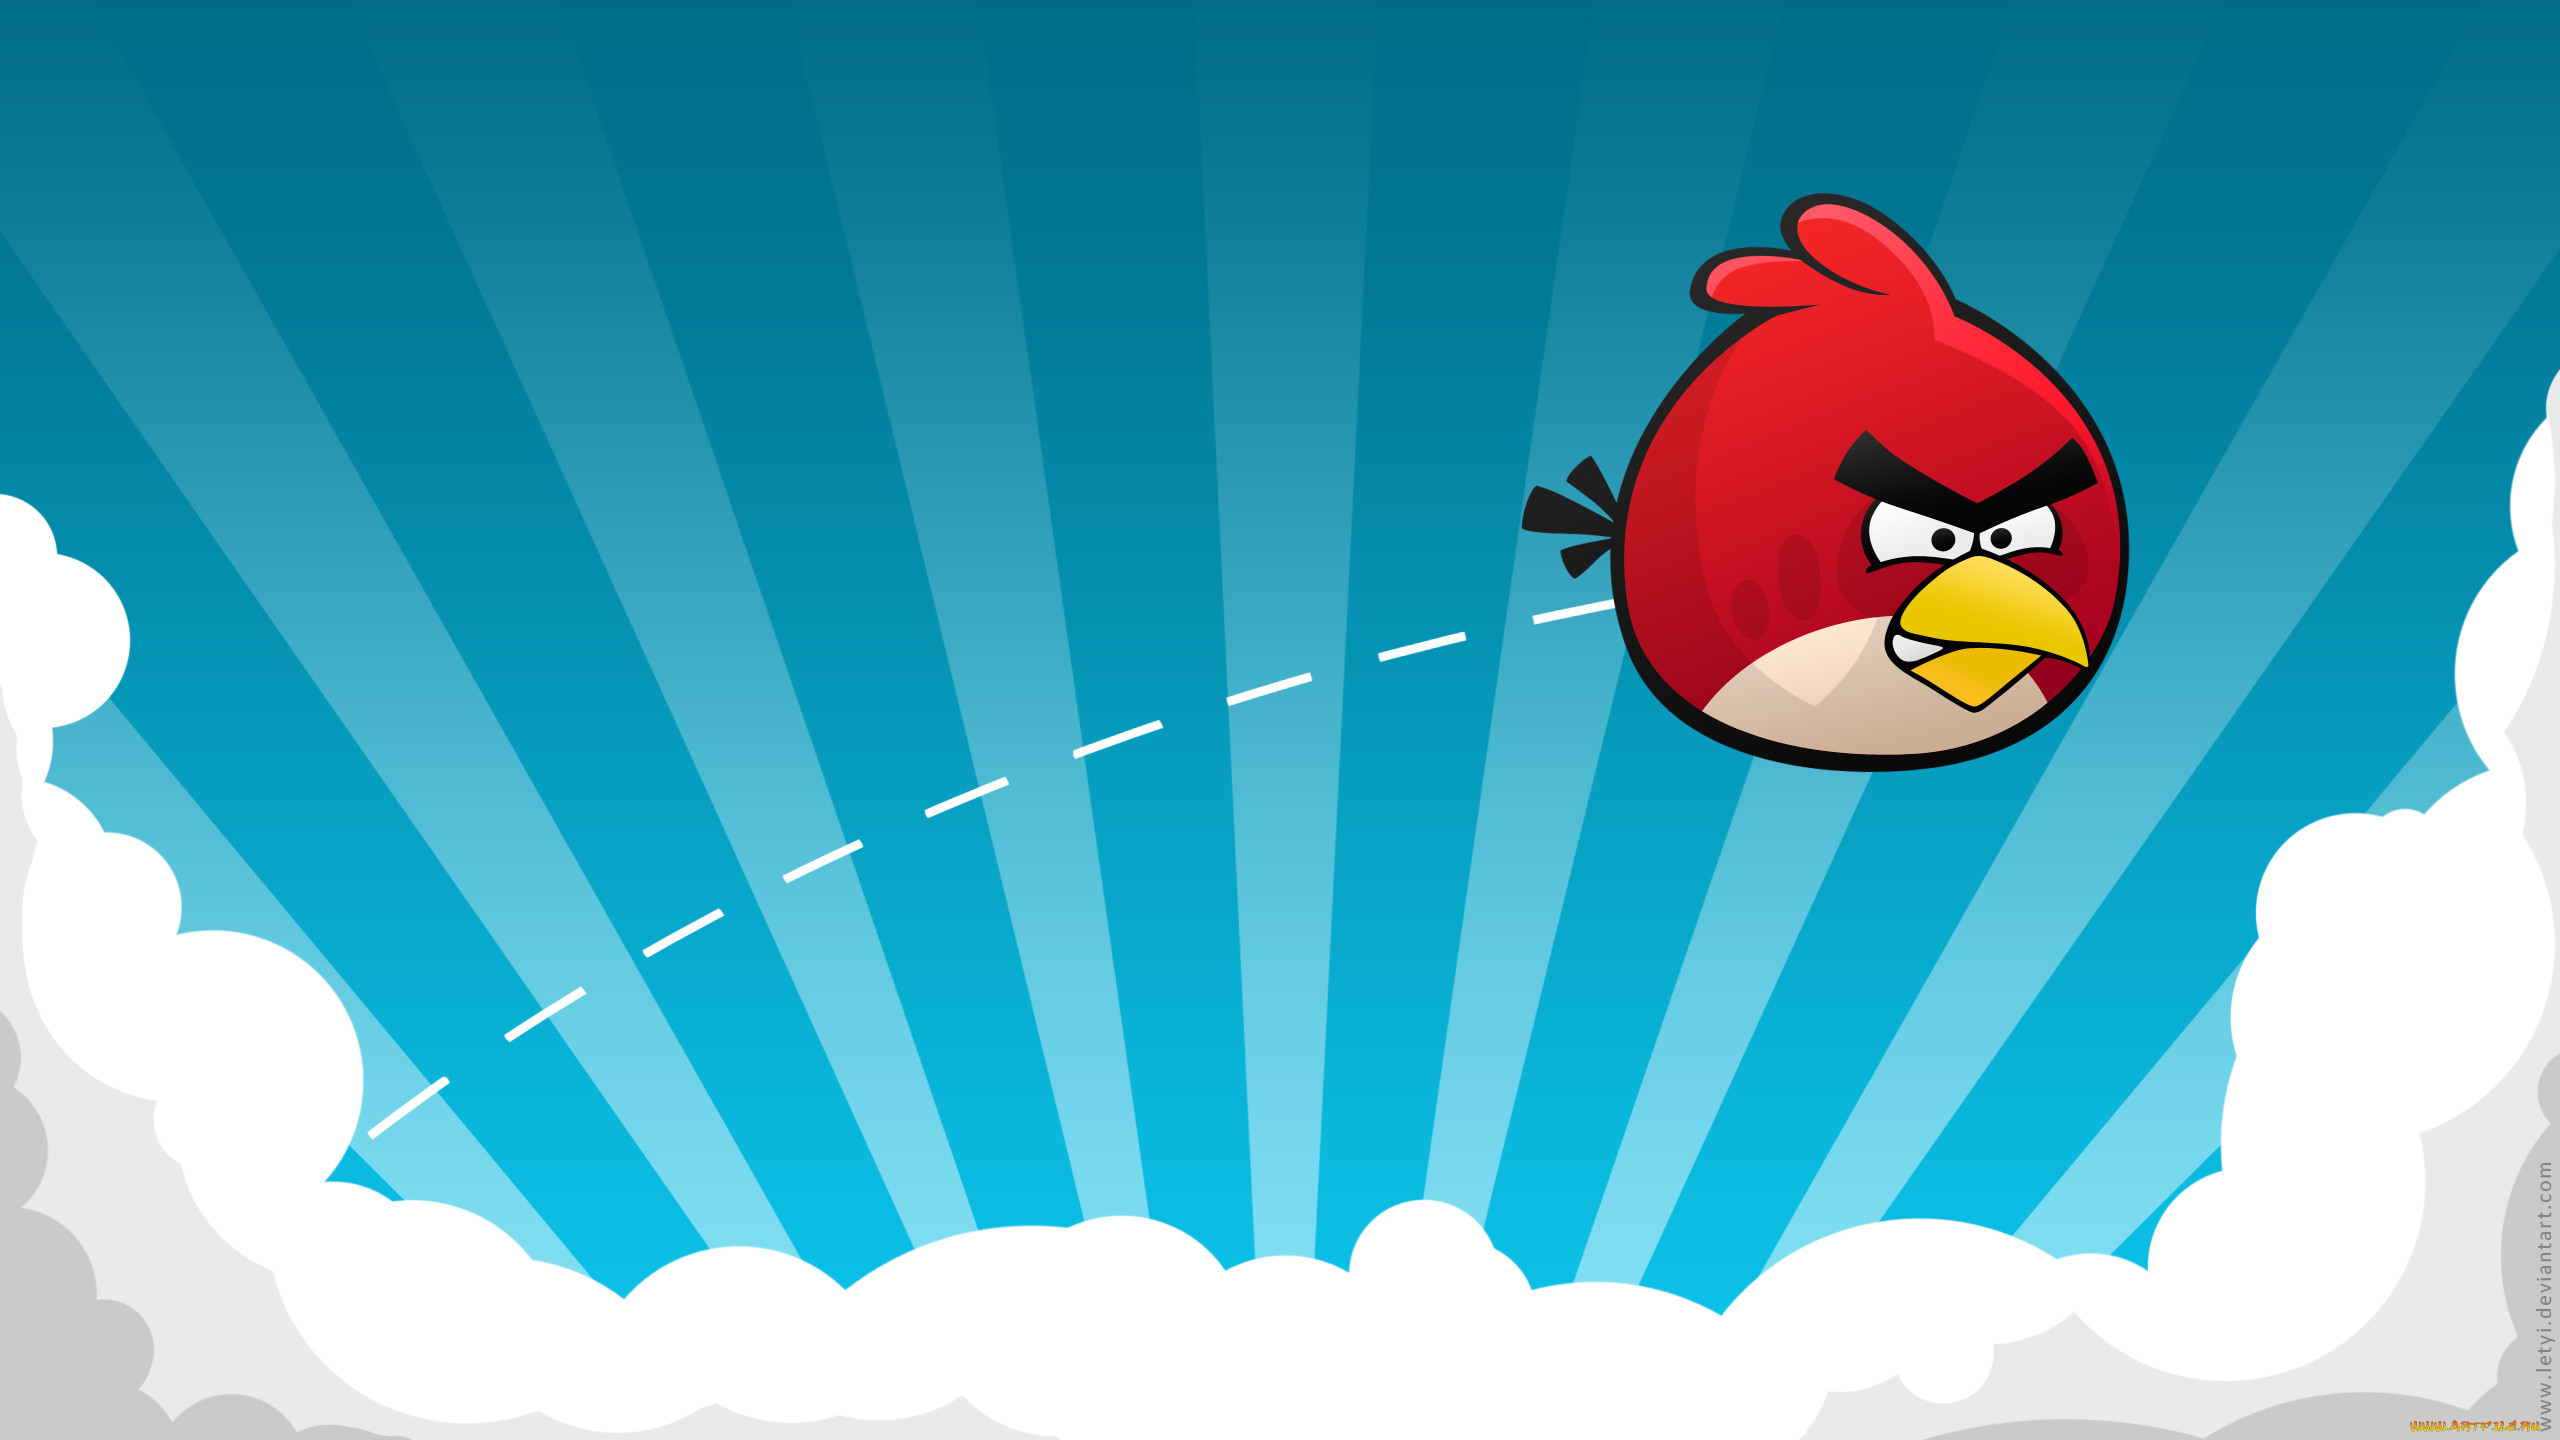 Обои angry birds Видео Игры Angry Birds, обои для рабочего стола,  фотографии angry, birds, видео, игры Обои для рабочего стола, скачать обои  картинки заставки на рабочий стол.